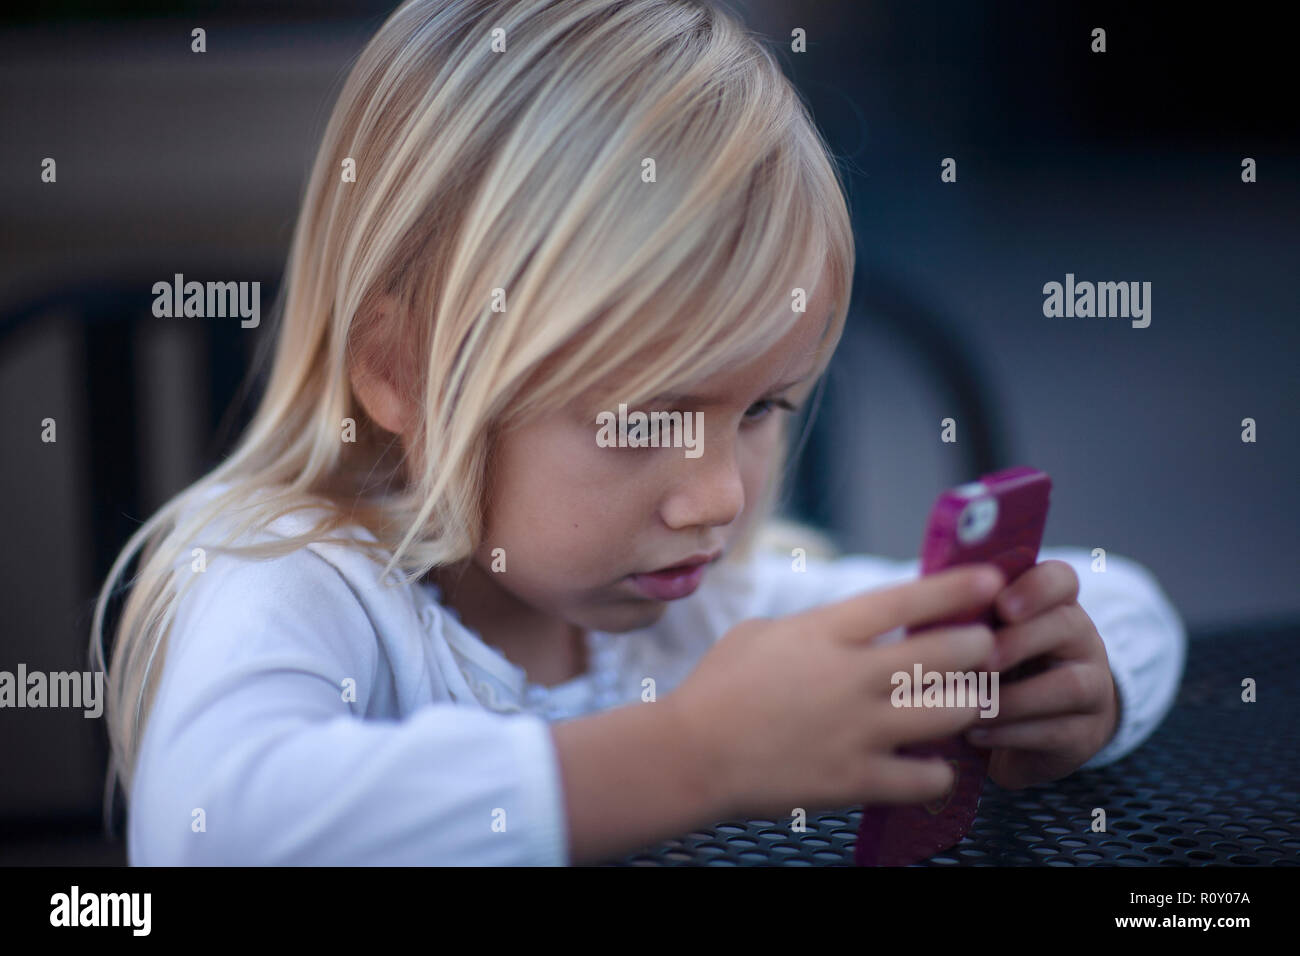 Junge blonde Mädchen in rosa Handy mit einem intensiven Blick auf ihrem Gesicht. Stockfoto